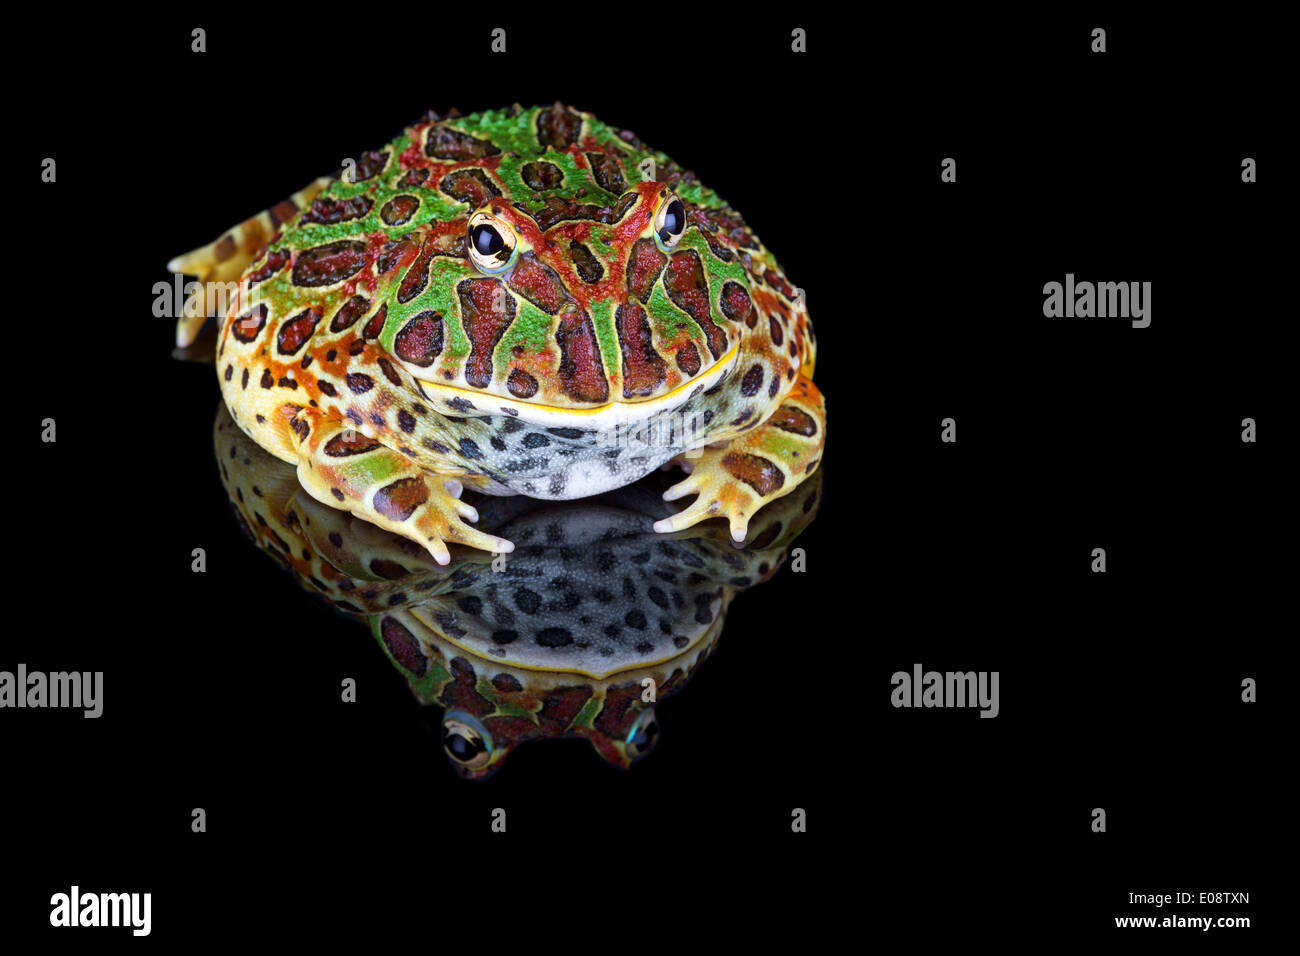 Ornate Horned Frog Stock Photo